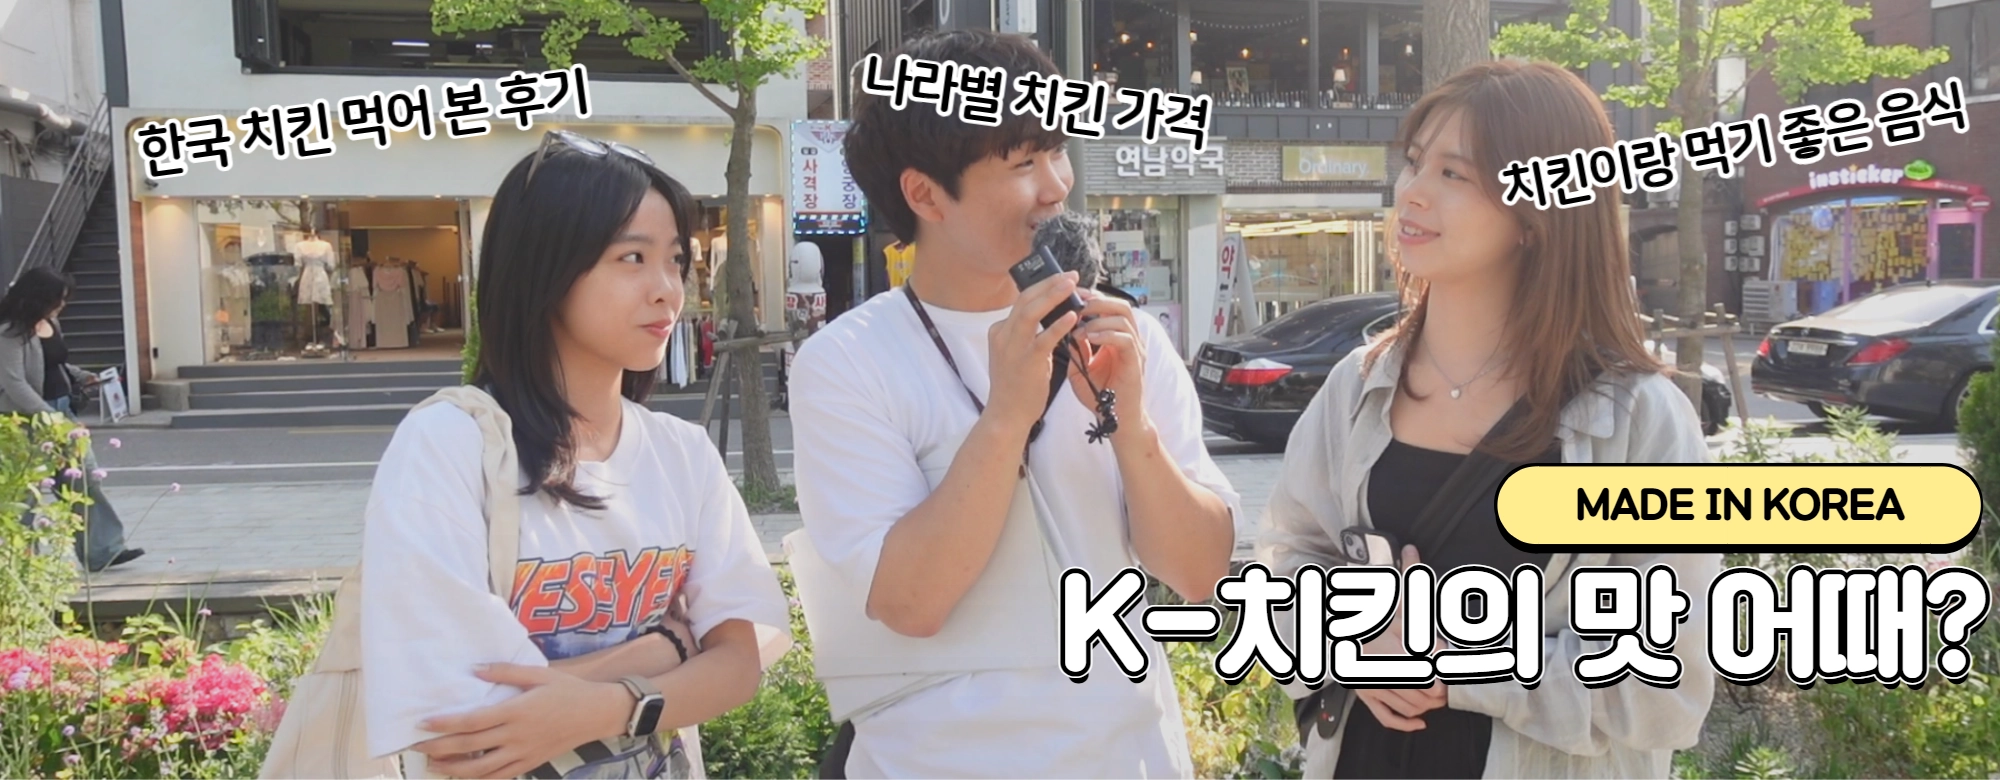 [영상]Made In Korea<5> “K-치킨을 아시나요?” 